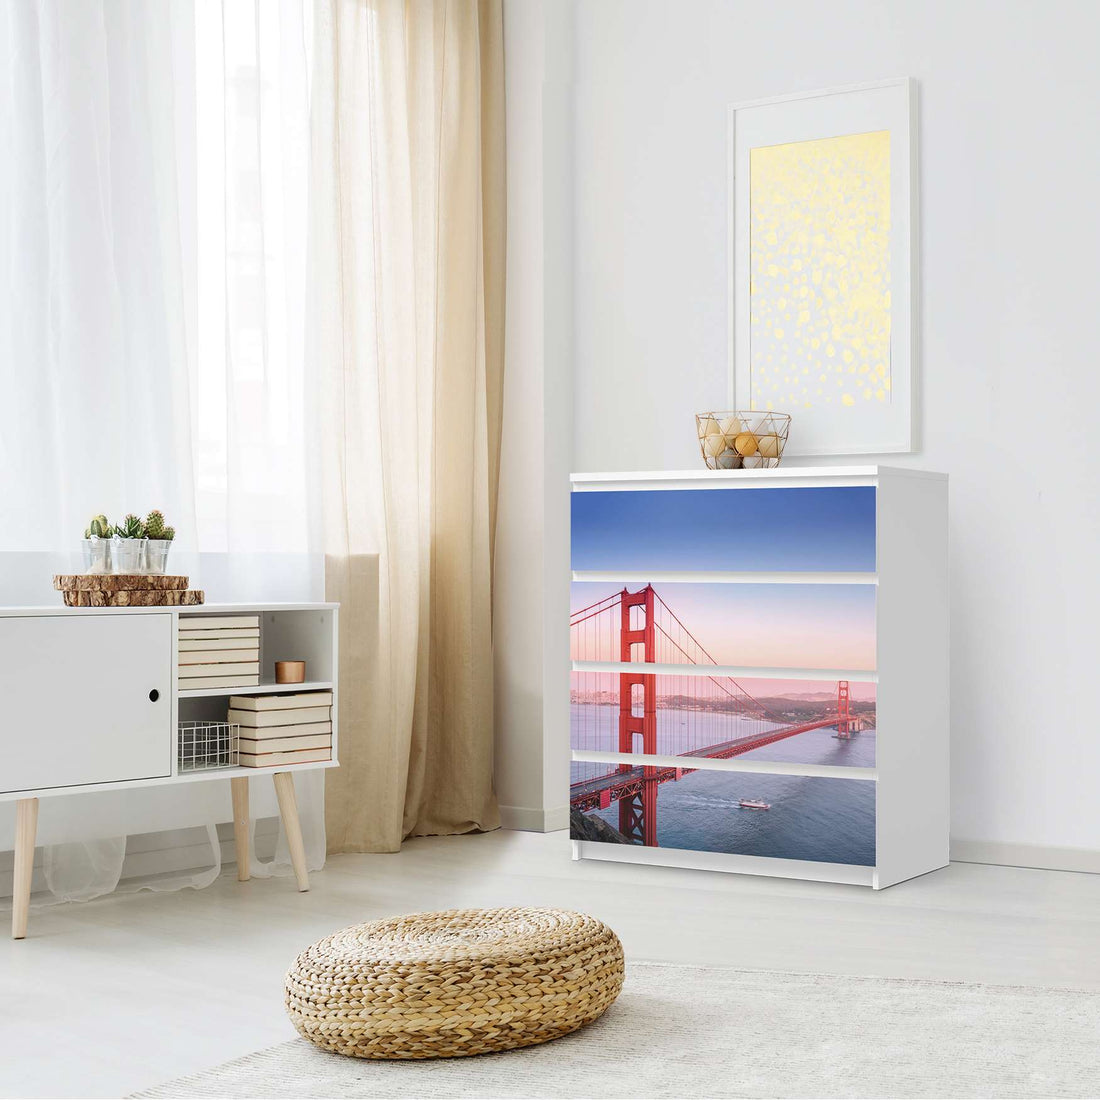 Folie für Möbel Golden Gate - IKEA Malm Kommode 4 Schubladen - Schlafzimmer